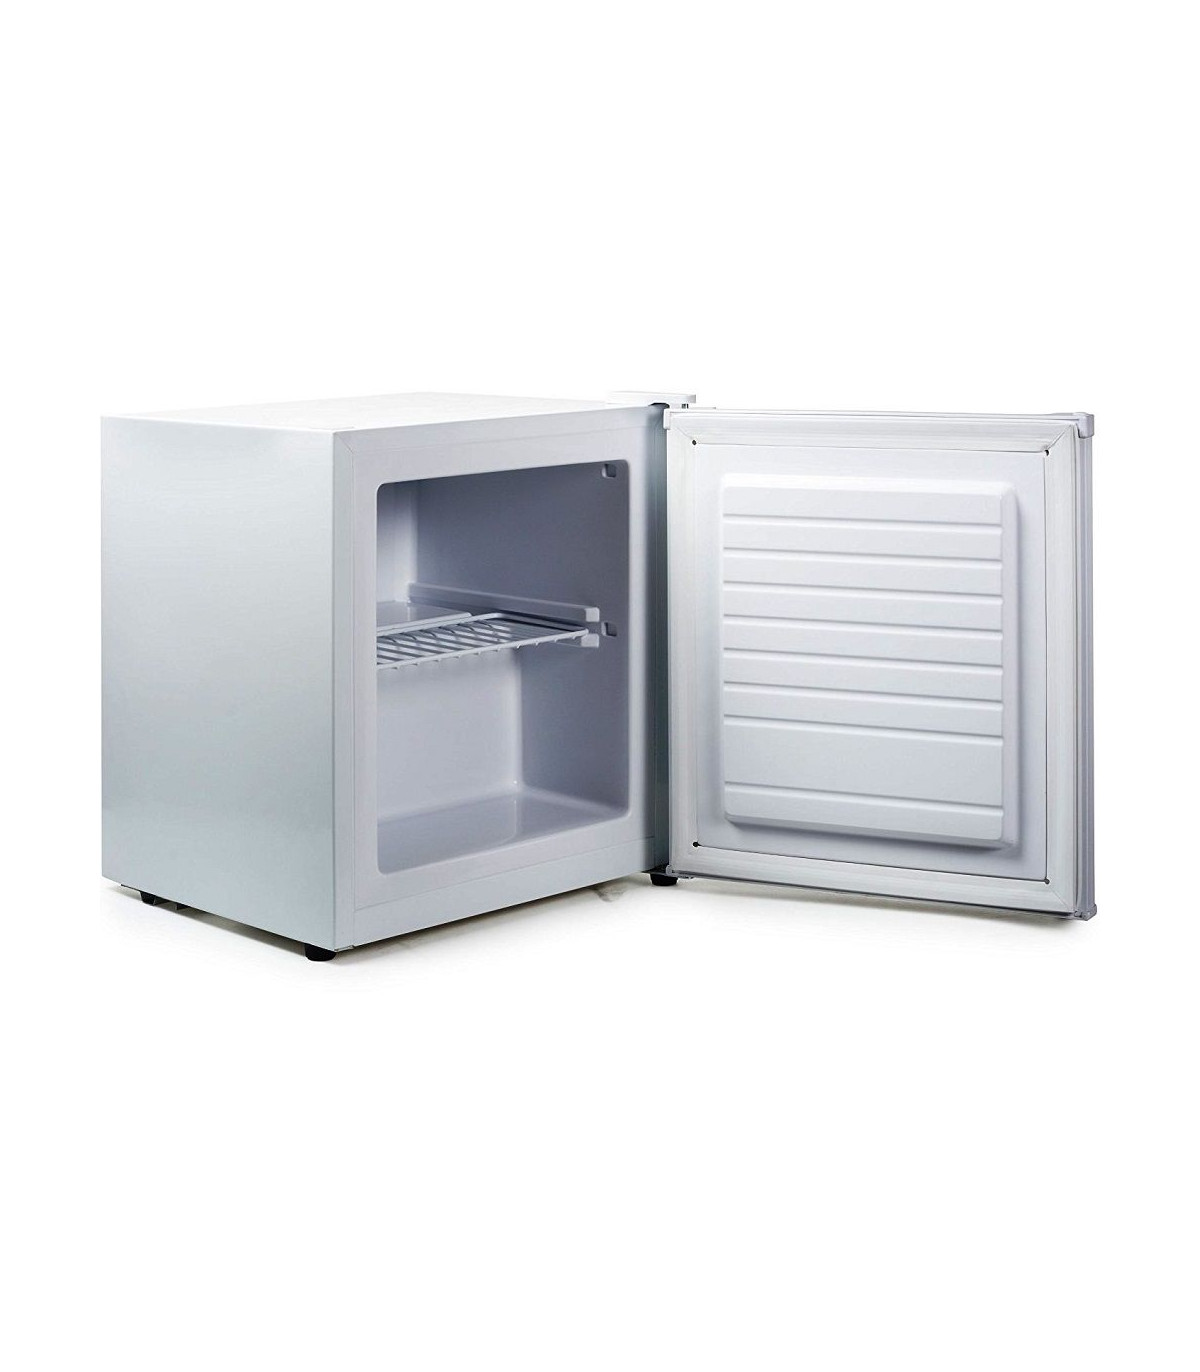 RWFLAME Mini congelador de 1.1 pies cúbicos, congelador pequeño reversible  de una sola puerta, congelador vertical con estantes, pies ajustables para